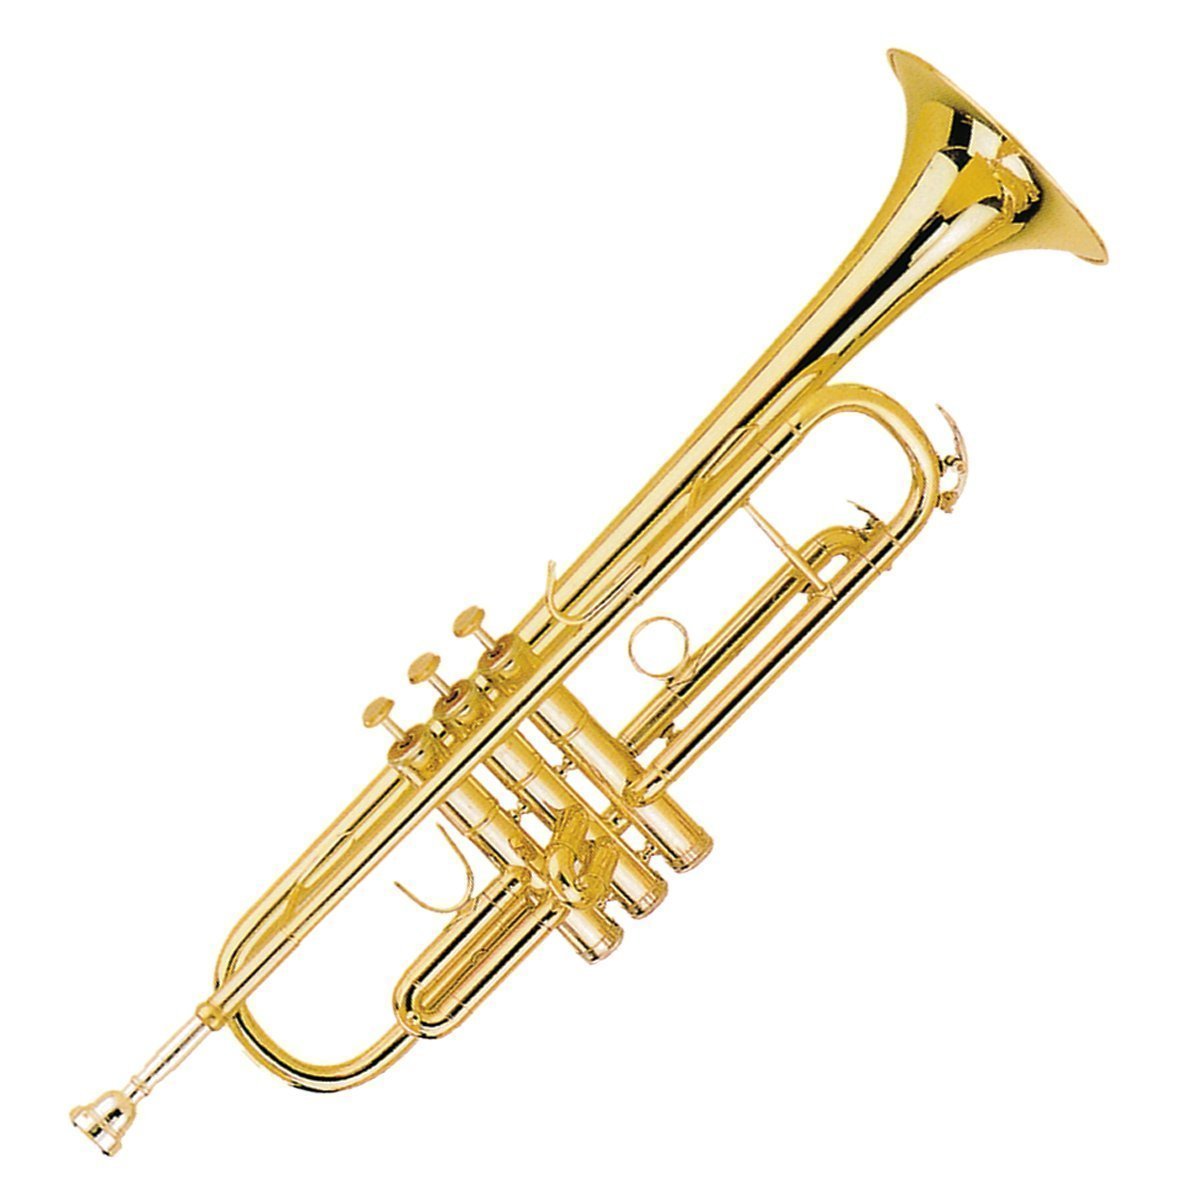 Steinhoff Student Trumpet (Gold)